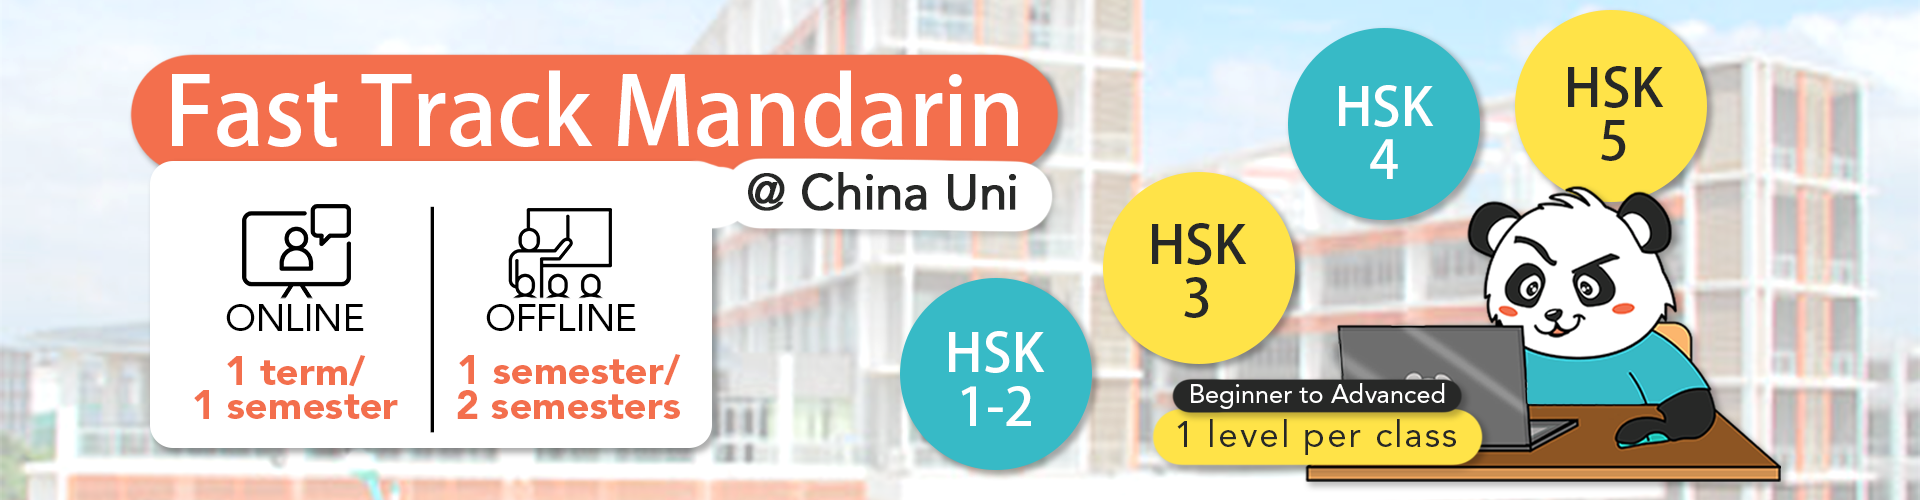 HSK-HSKK-Fast-Track-Mandarin-@China-Uni-Reservation-Banner